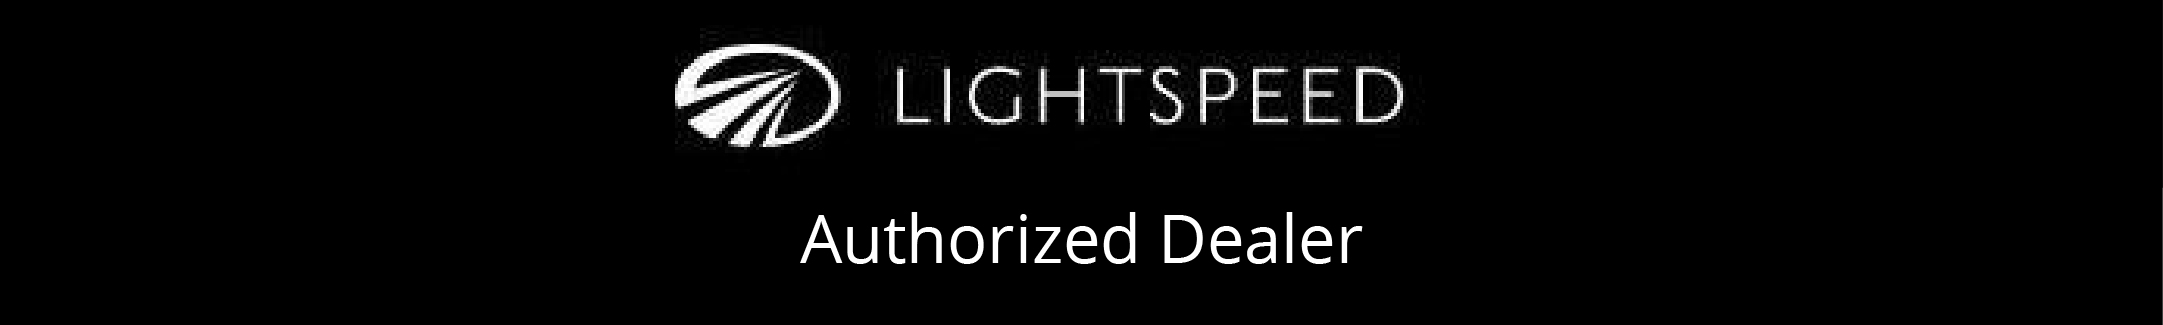 lightspeed-logoad.jpg